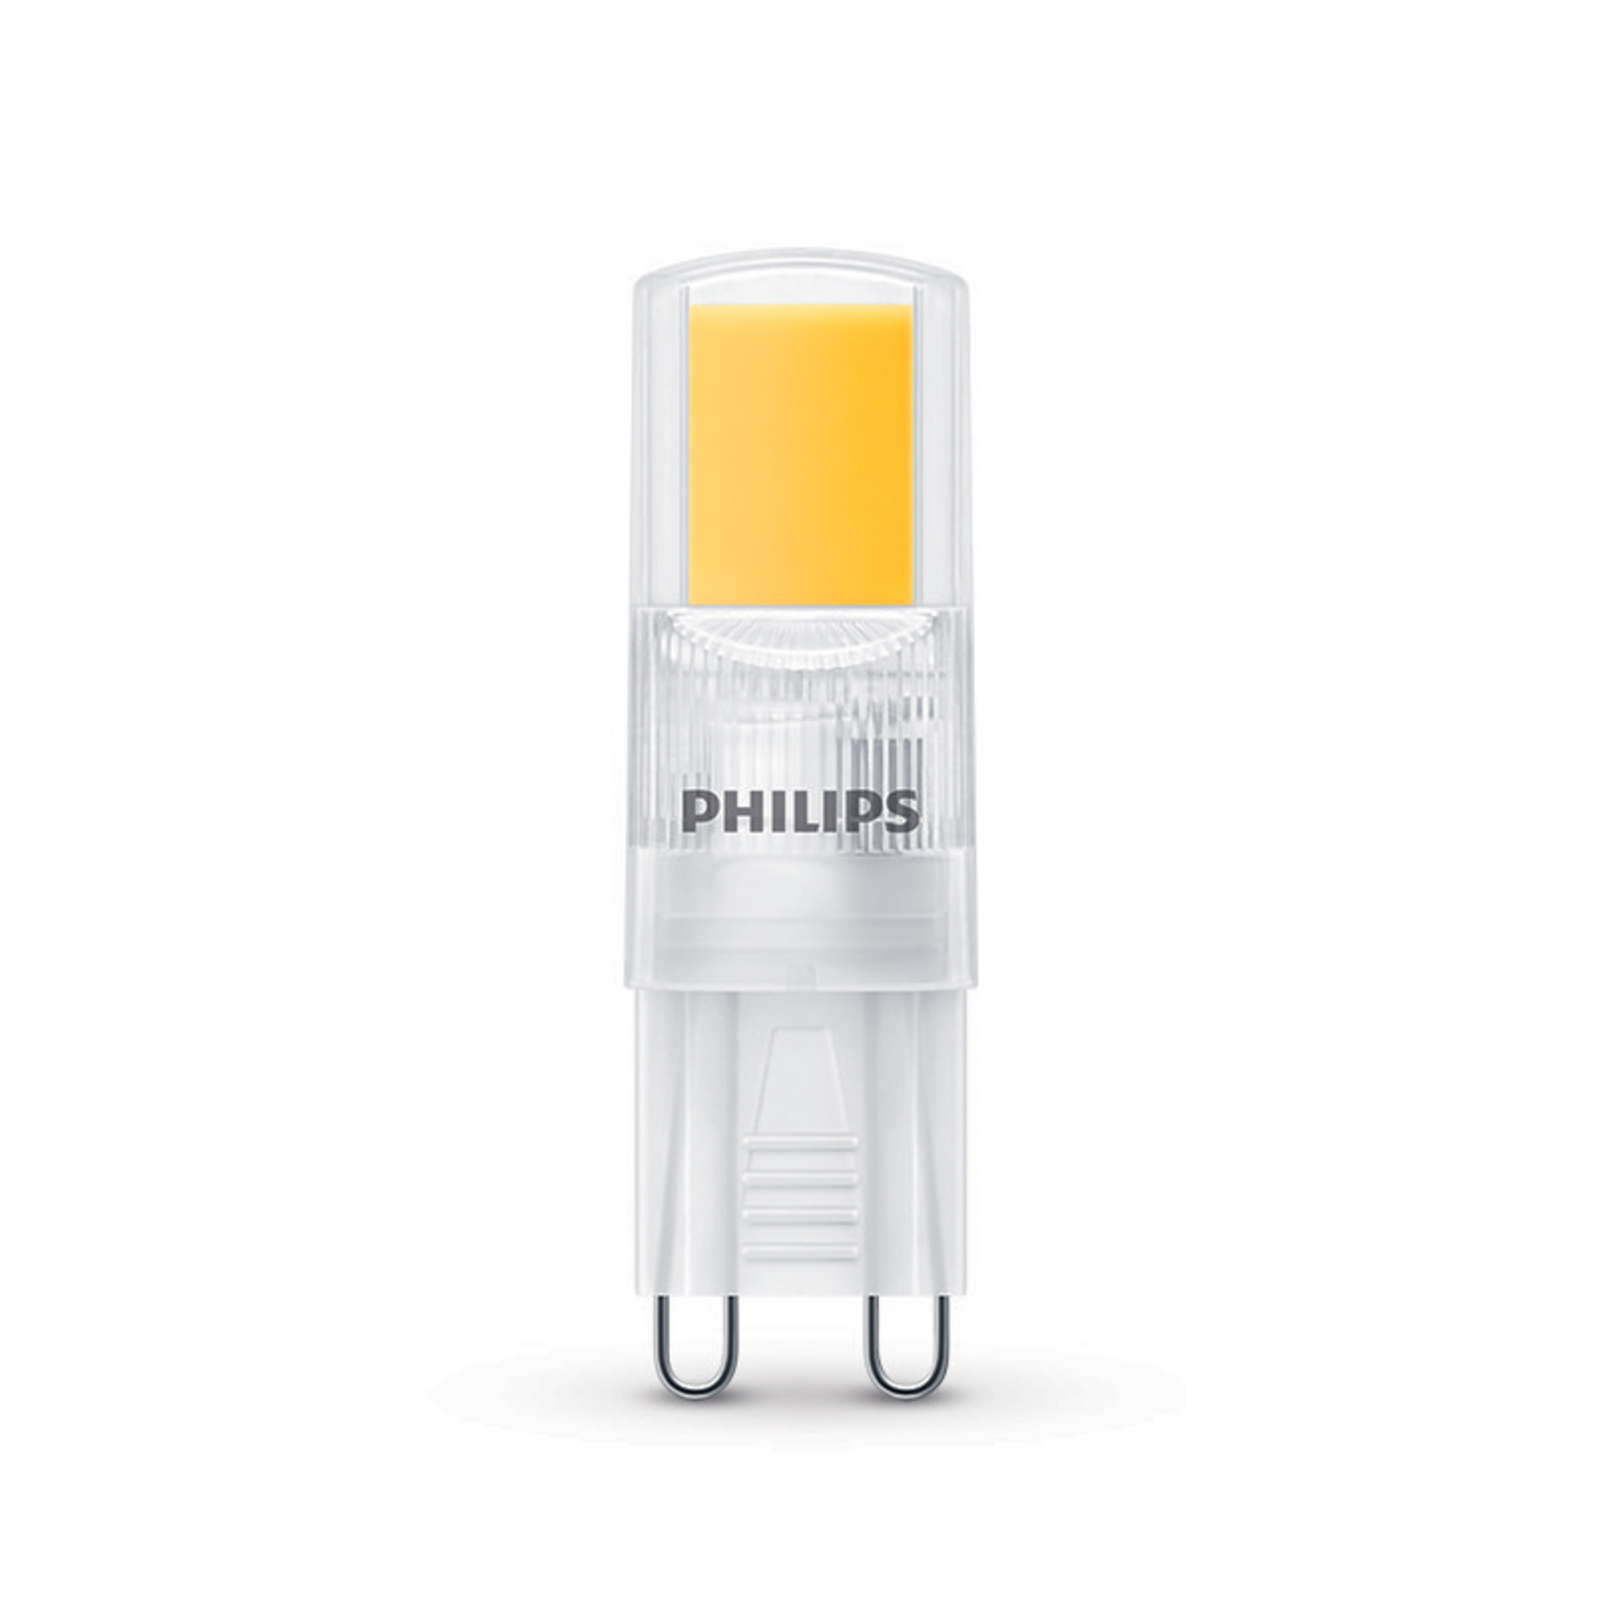 Philips ampoule LED G9 2W 220lm 2 700K claire x3